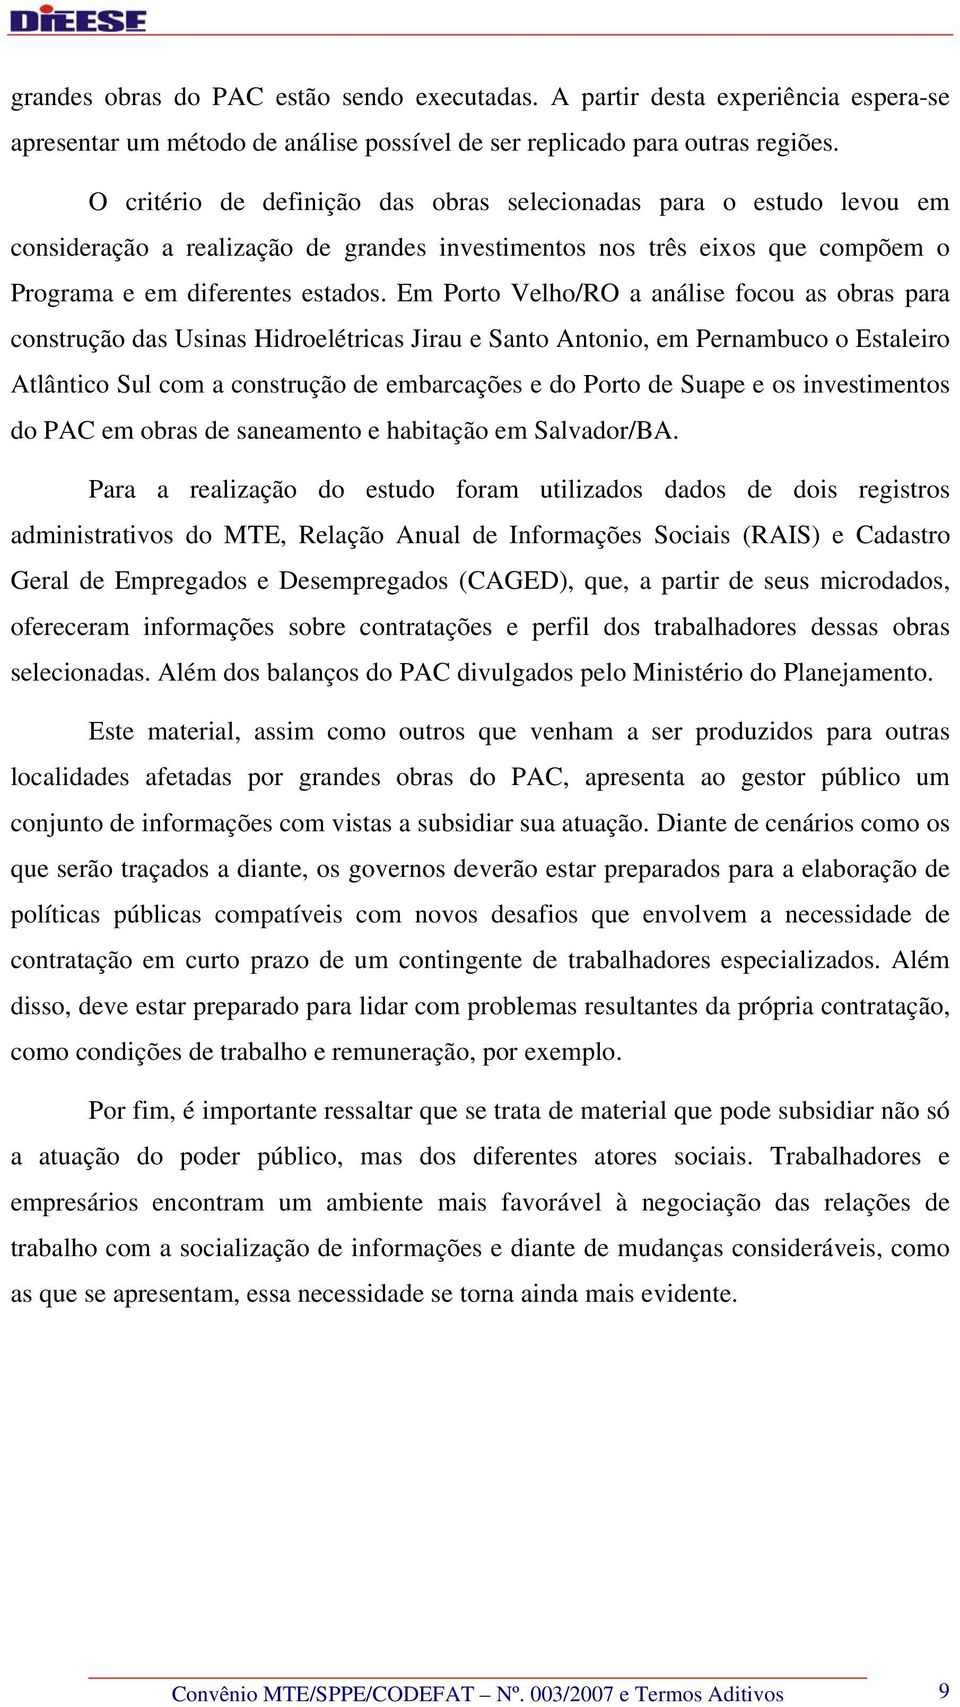 Em Porto Velho/RO a análise focou as obras para construção das Usinas Hidroelétricas Jirau e Santo Antonio, em Pernambuco o Estaleiro Atlântico Sul com a construção de embarcações e do Porto de Suape